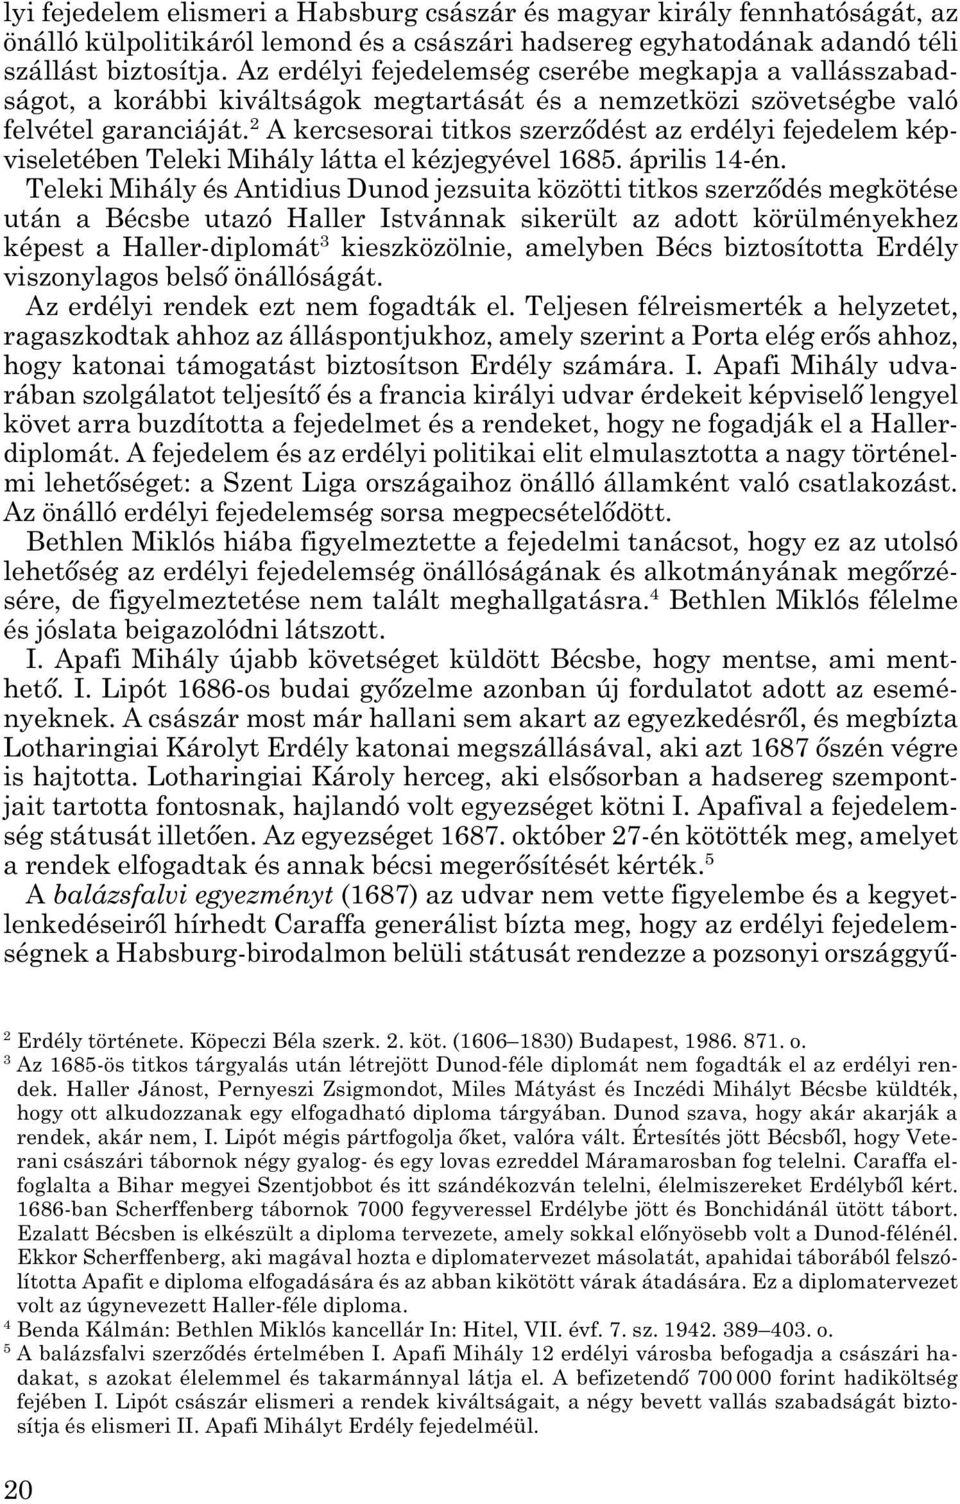 2 A kercsesorai titkos szerződést az erdélyi fejedelem kép - viseletében Teleki Mihály látta el kézjegyével 1685. április 14-én.